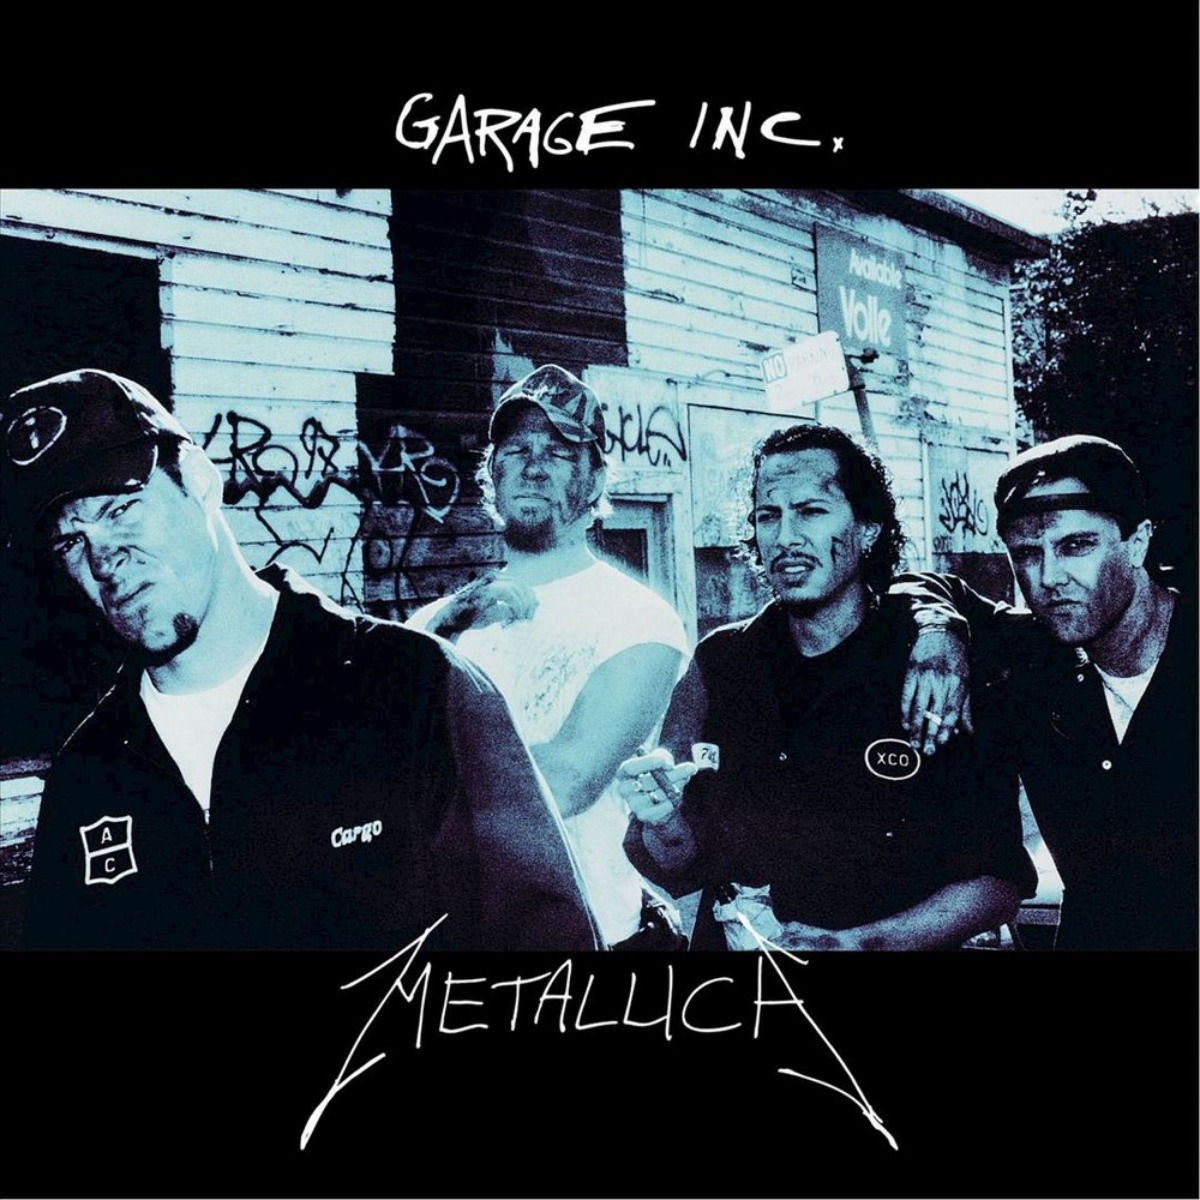 Reprise de "Garage Inc." de Metallica.